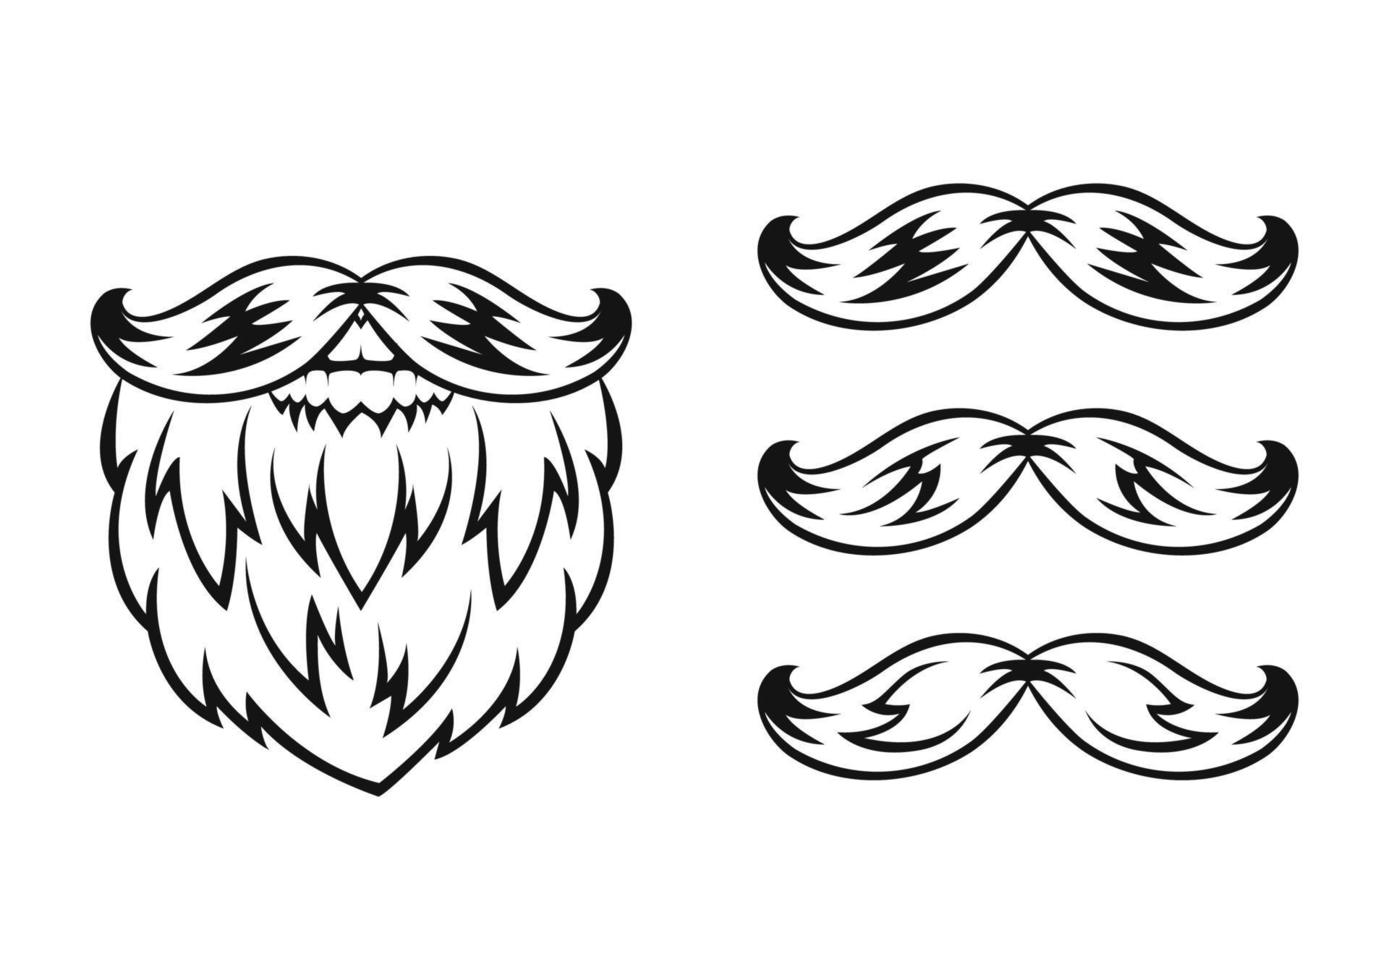 Barba y bigote. silueta negra. elemento de diseño boceto dibujado a mano. estilo vintage. ilustración vectorial vector